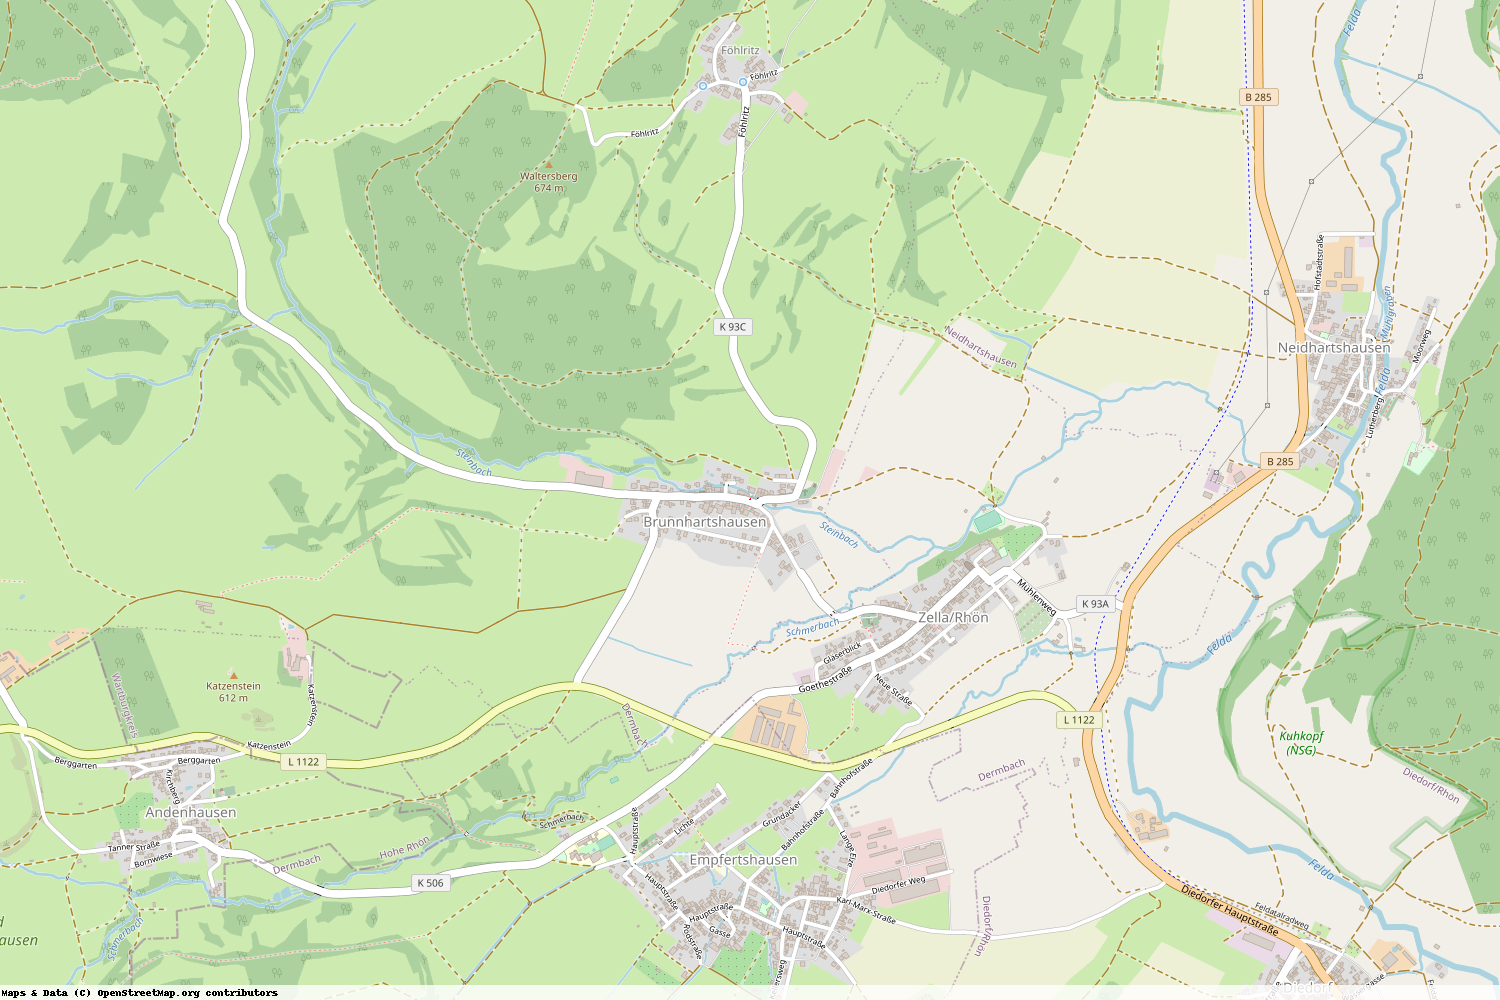 Ist gerade Stromausfall in Thüringen - Wartburgkreis - Brunnhartshausen?